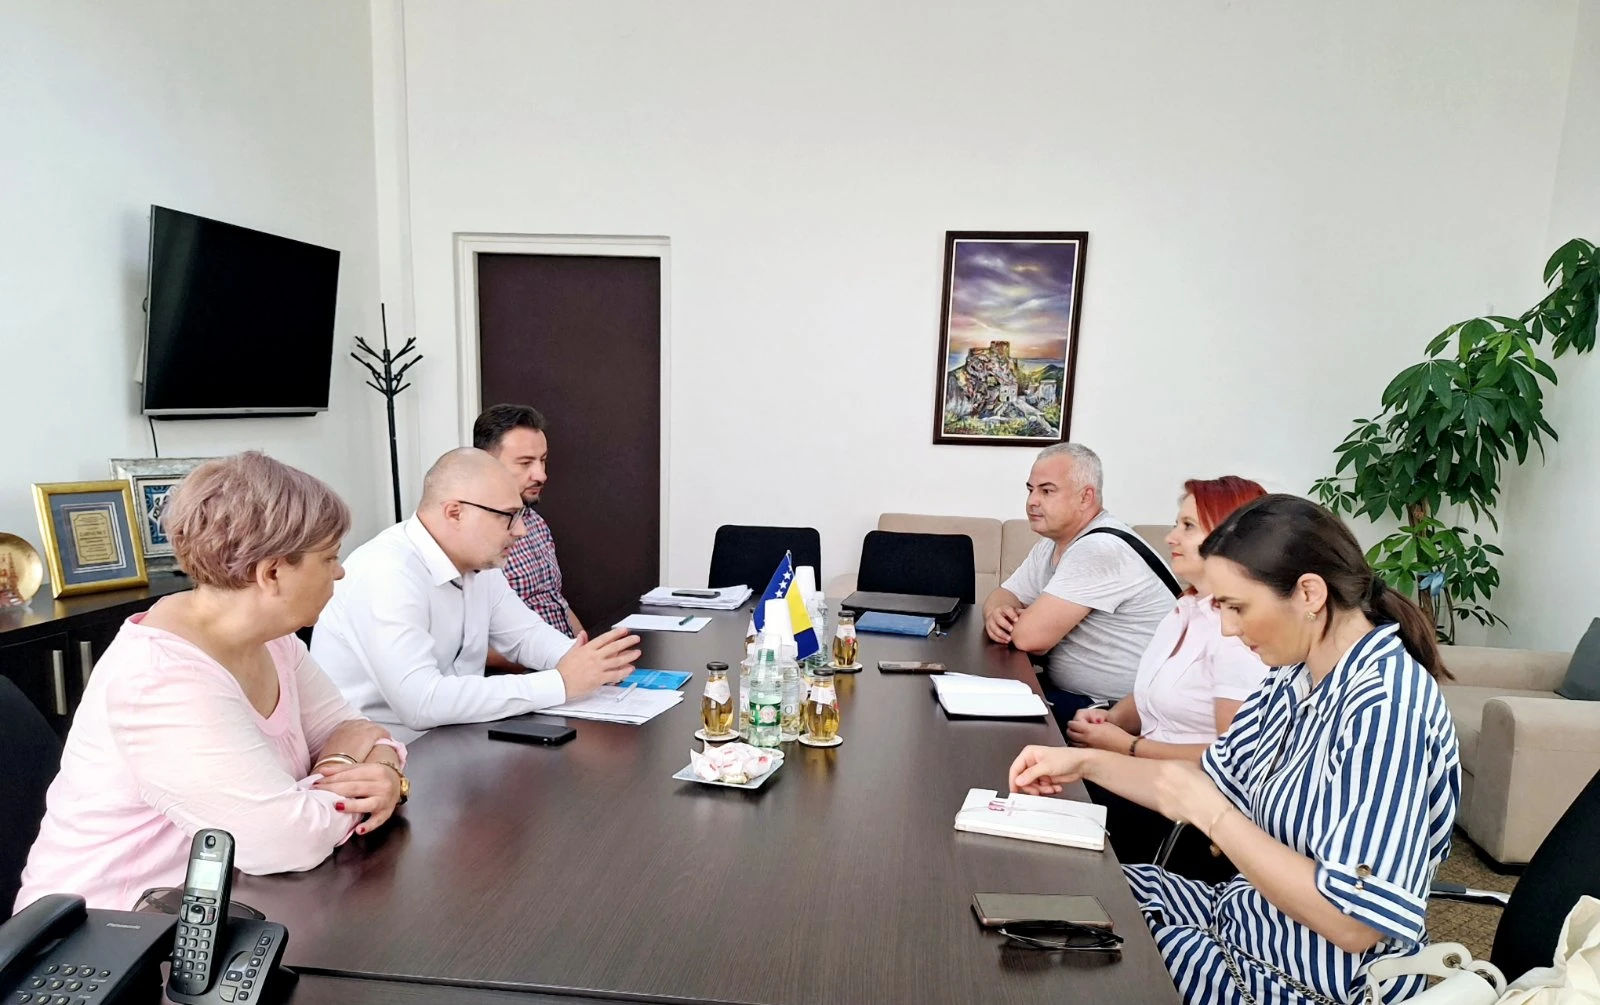 Ministar Omerović održao radni sastanak sa predstavnicima UG “Imam pravo”